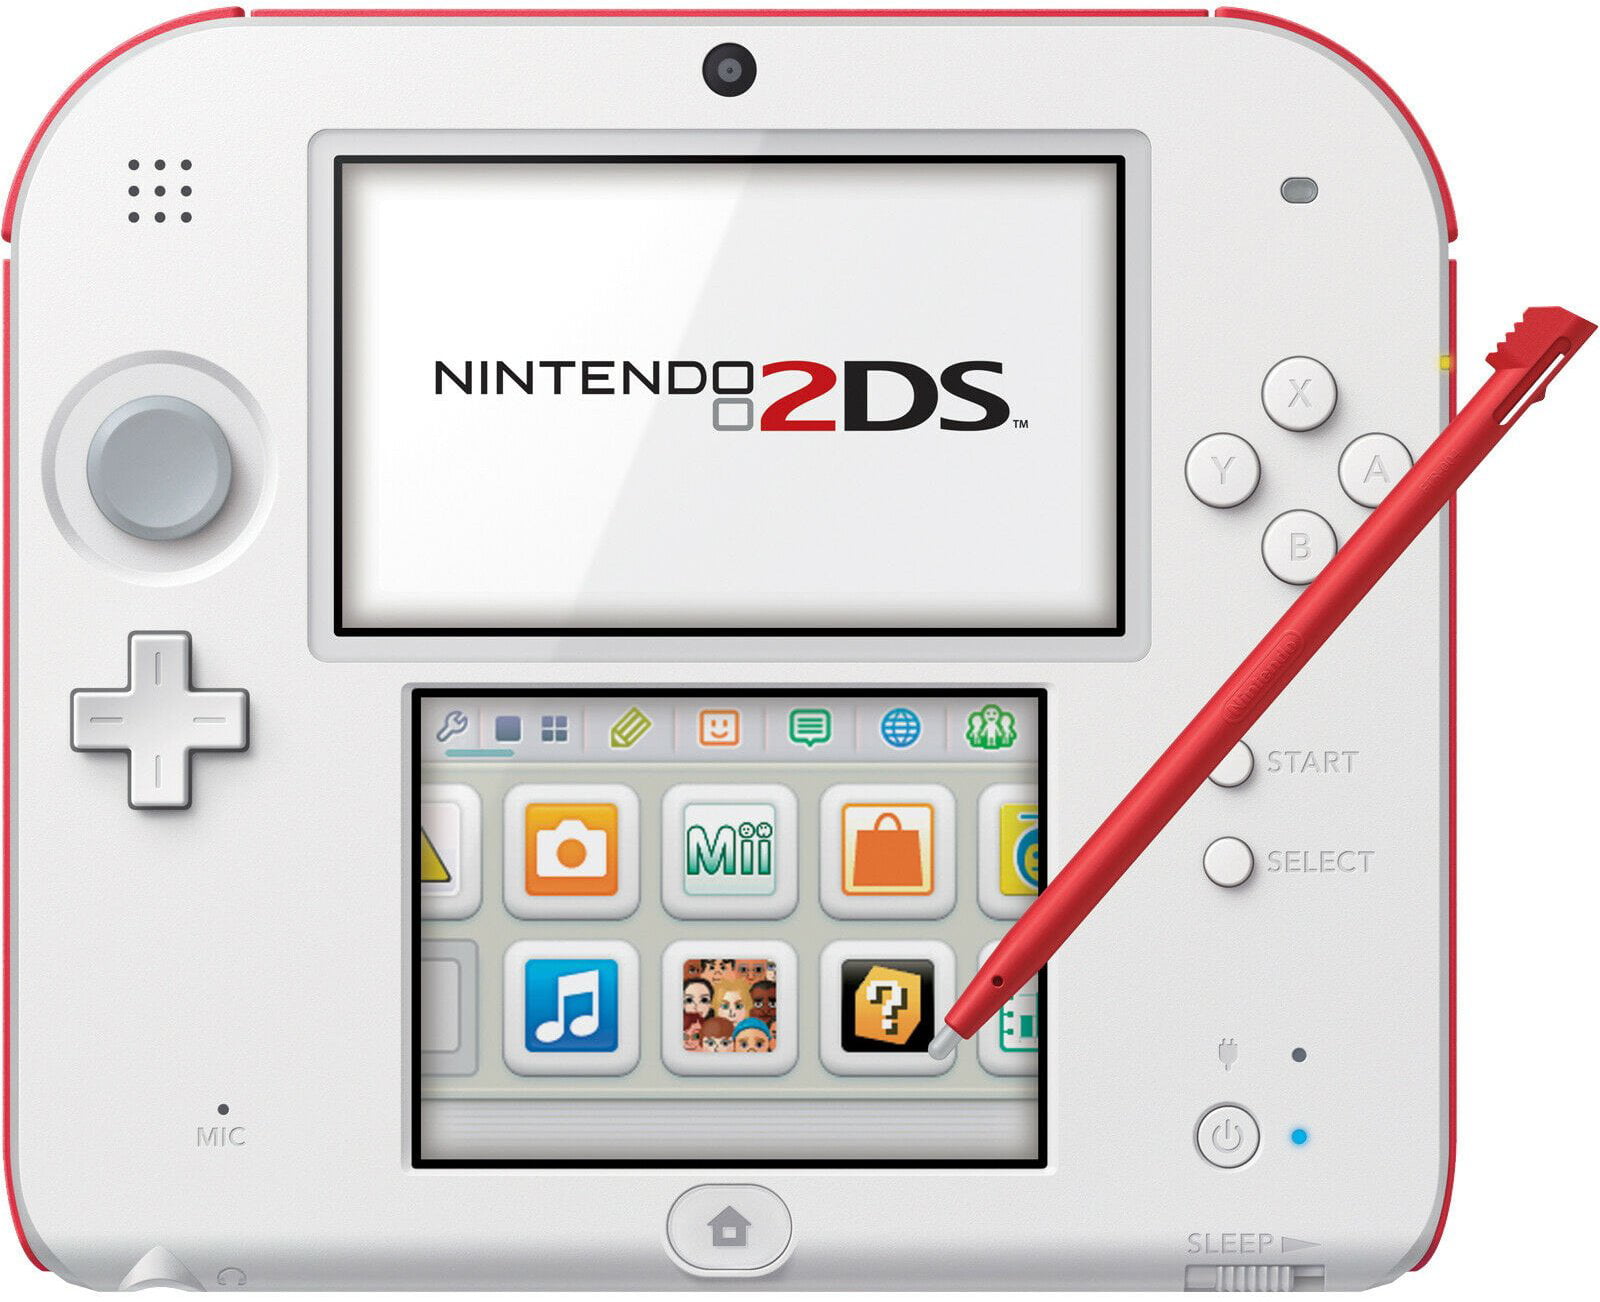 ciervo Persona especial Abreviar Nintendo 2DS Console - Red + White [Nintendo 2DS System] - Walmart.com